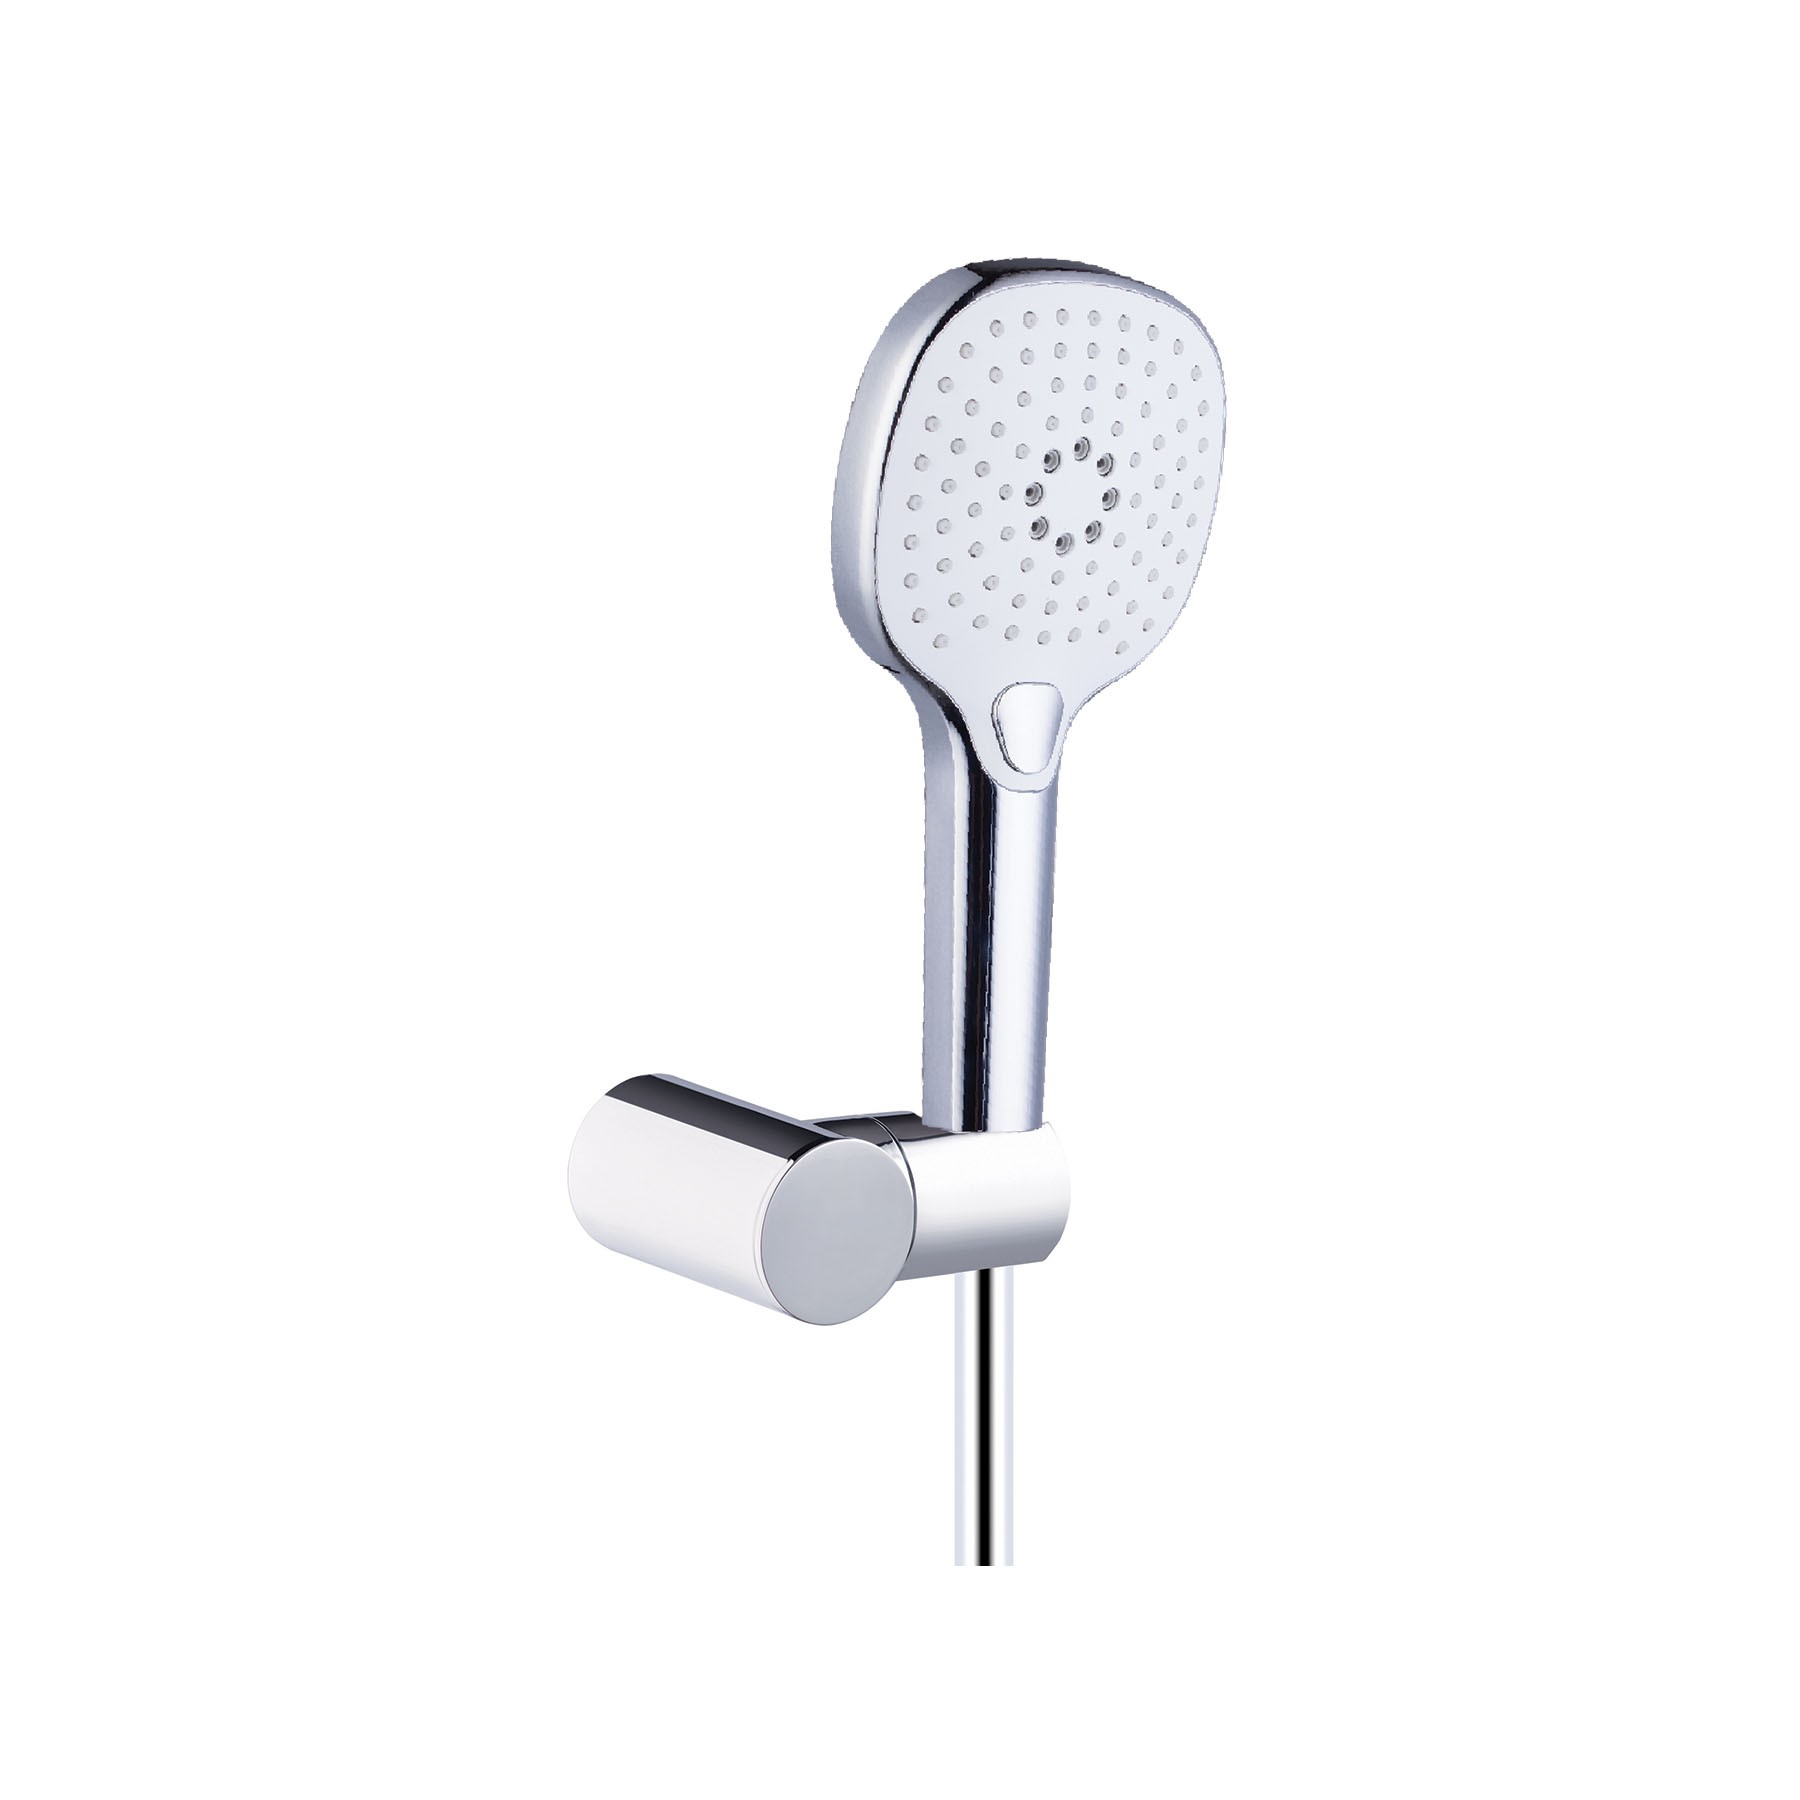 Sprchový set Auris Mode S - ruční sprcha se třemi typy produdu, včetně držáku a hadice, chrom